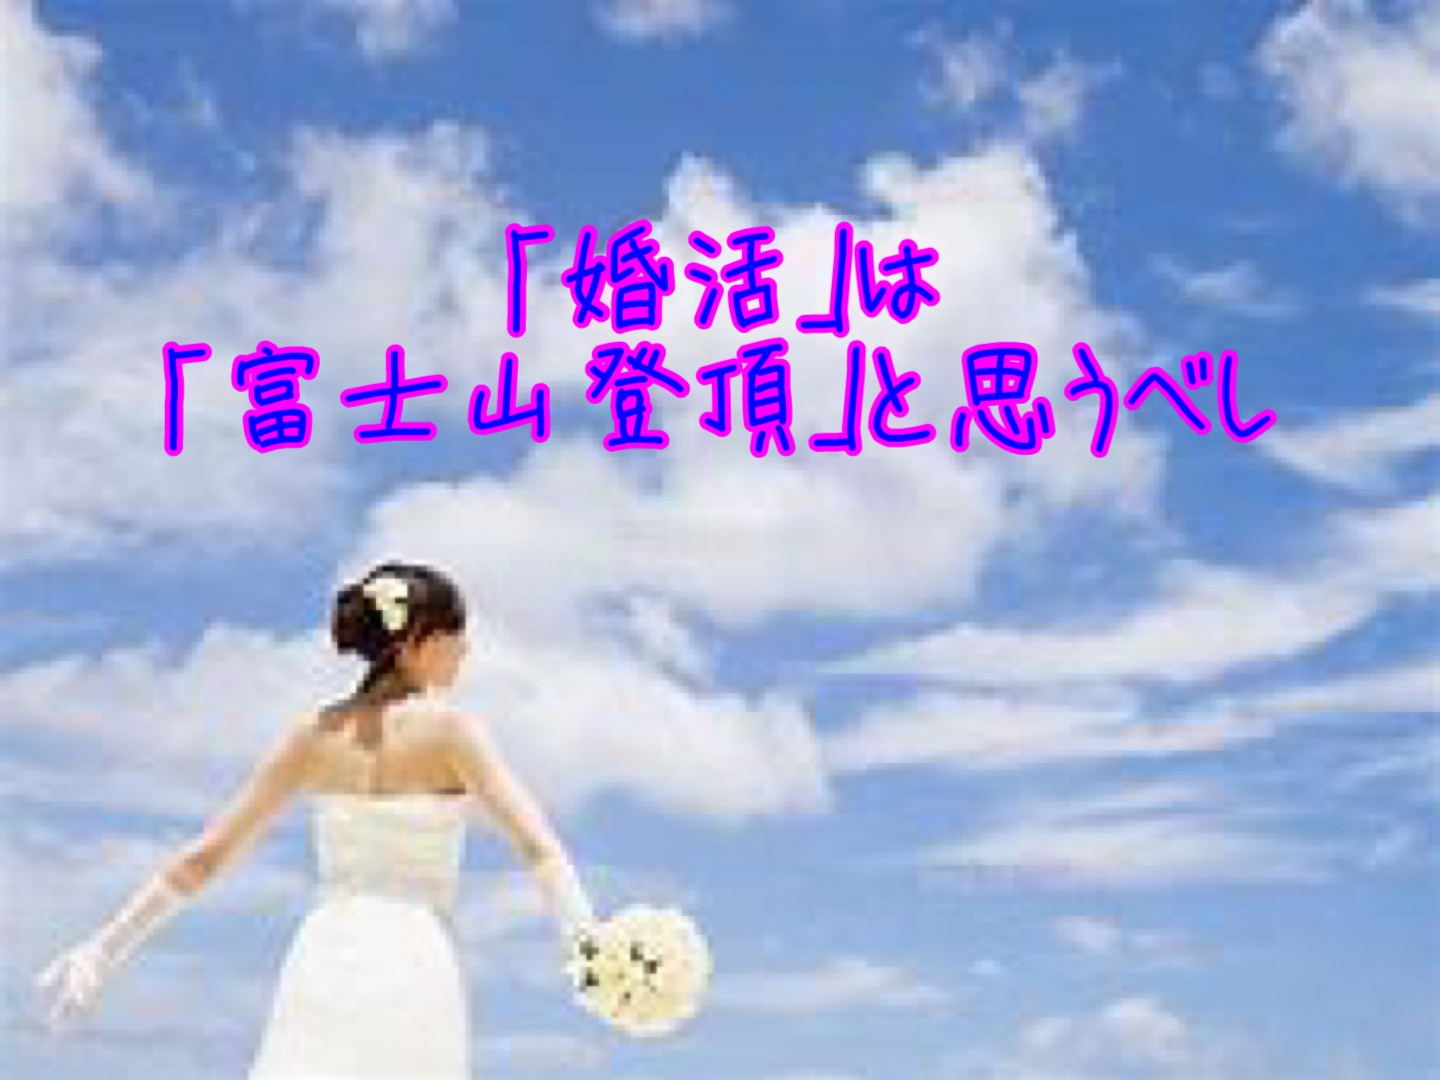 「婚活」は「富士山登頂」と思うべし